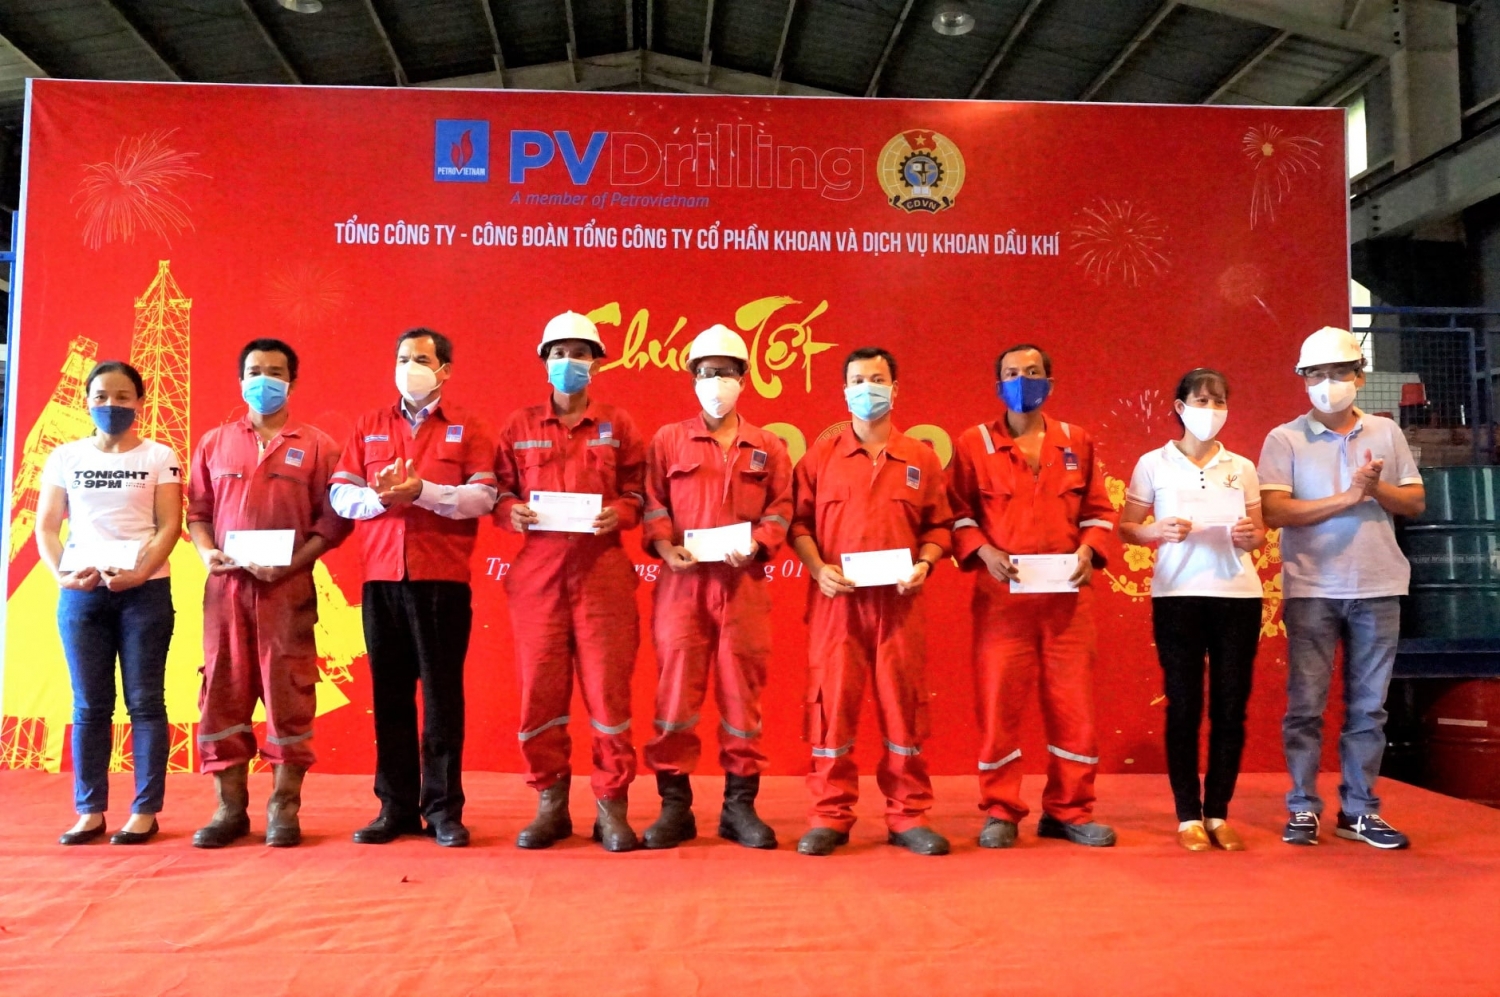 Công đoàn PV Drilling chăm lo tết cho người lao động xuân Nhâm Dần 2022